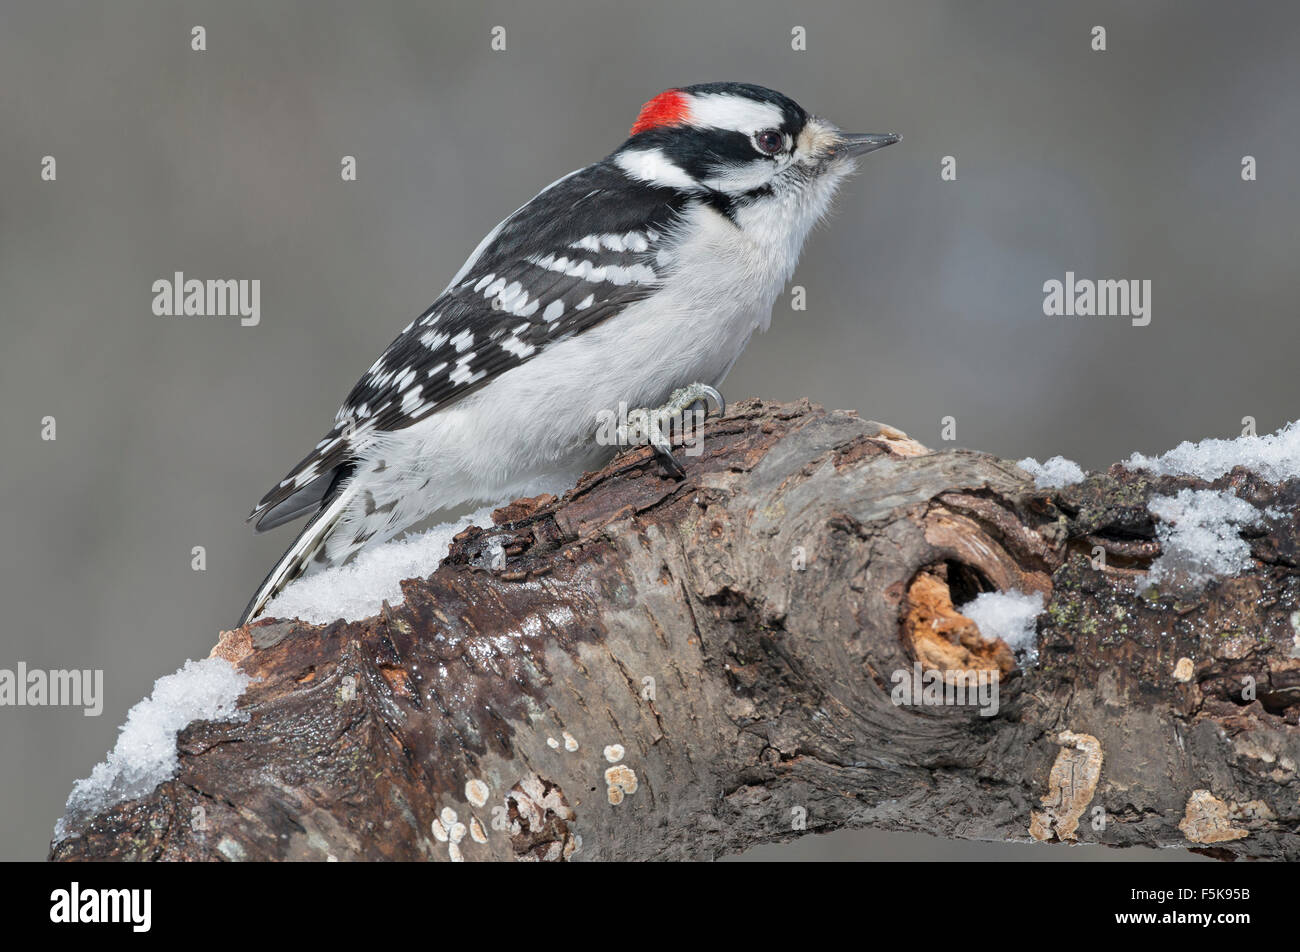 Downy Woodpecker (Dryobates pubescens) on dead tree limb, E USA Stock Photo